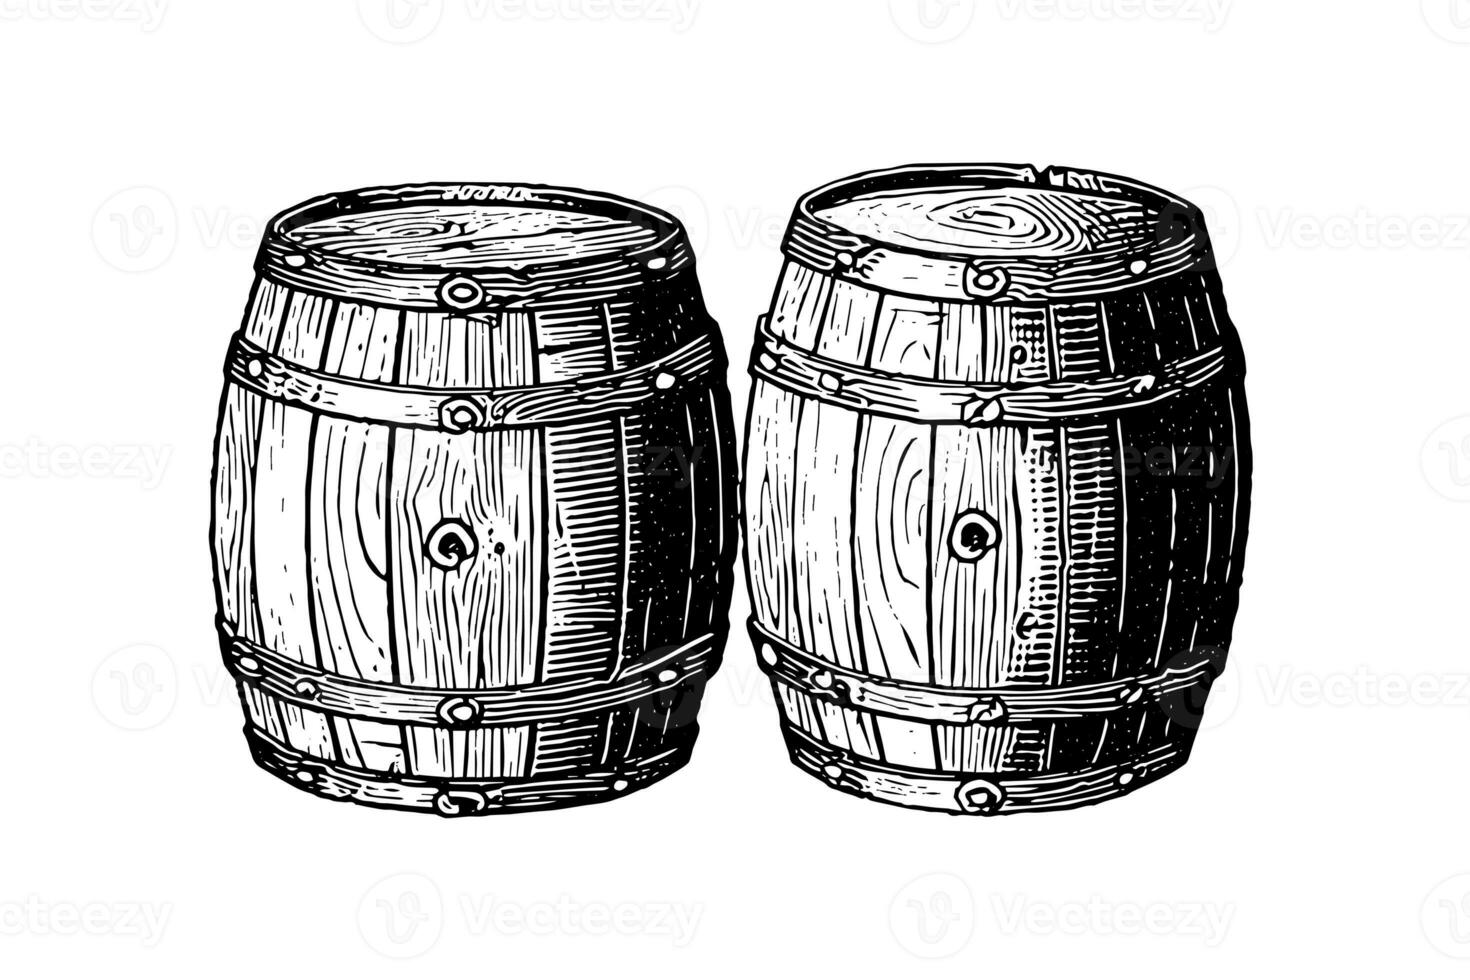 roble de madera barril mano dibujado bosquejo grabado estilo vector ilustración. foto